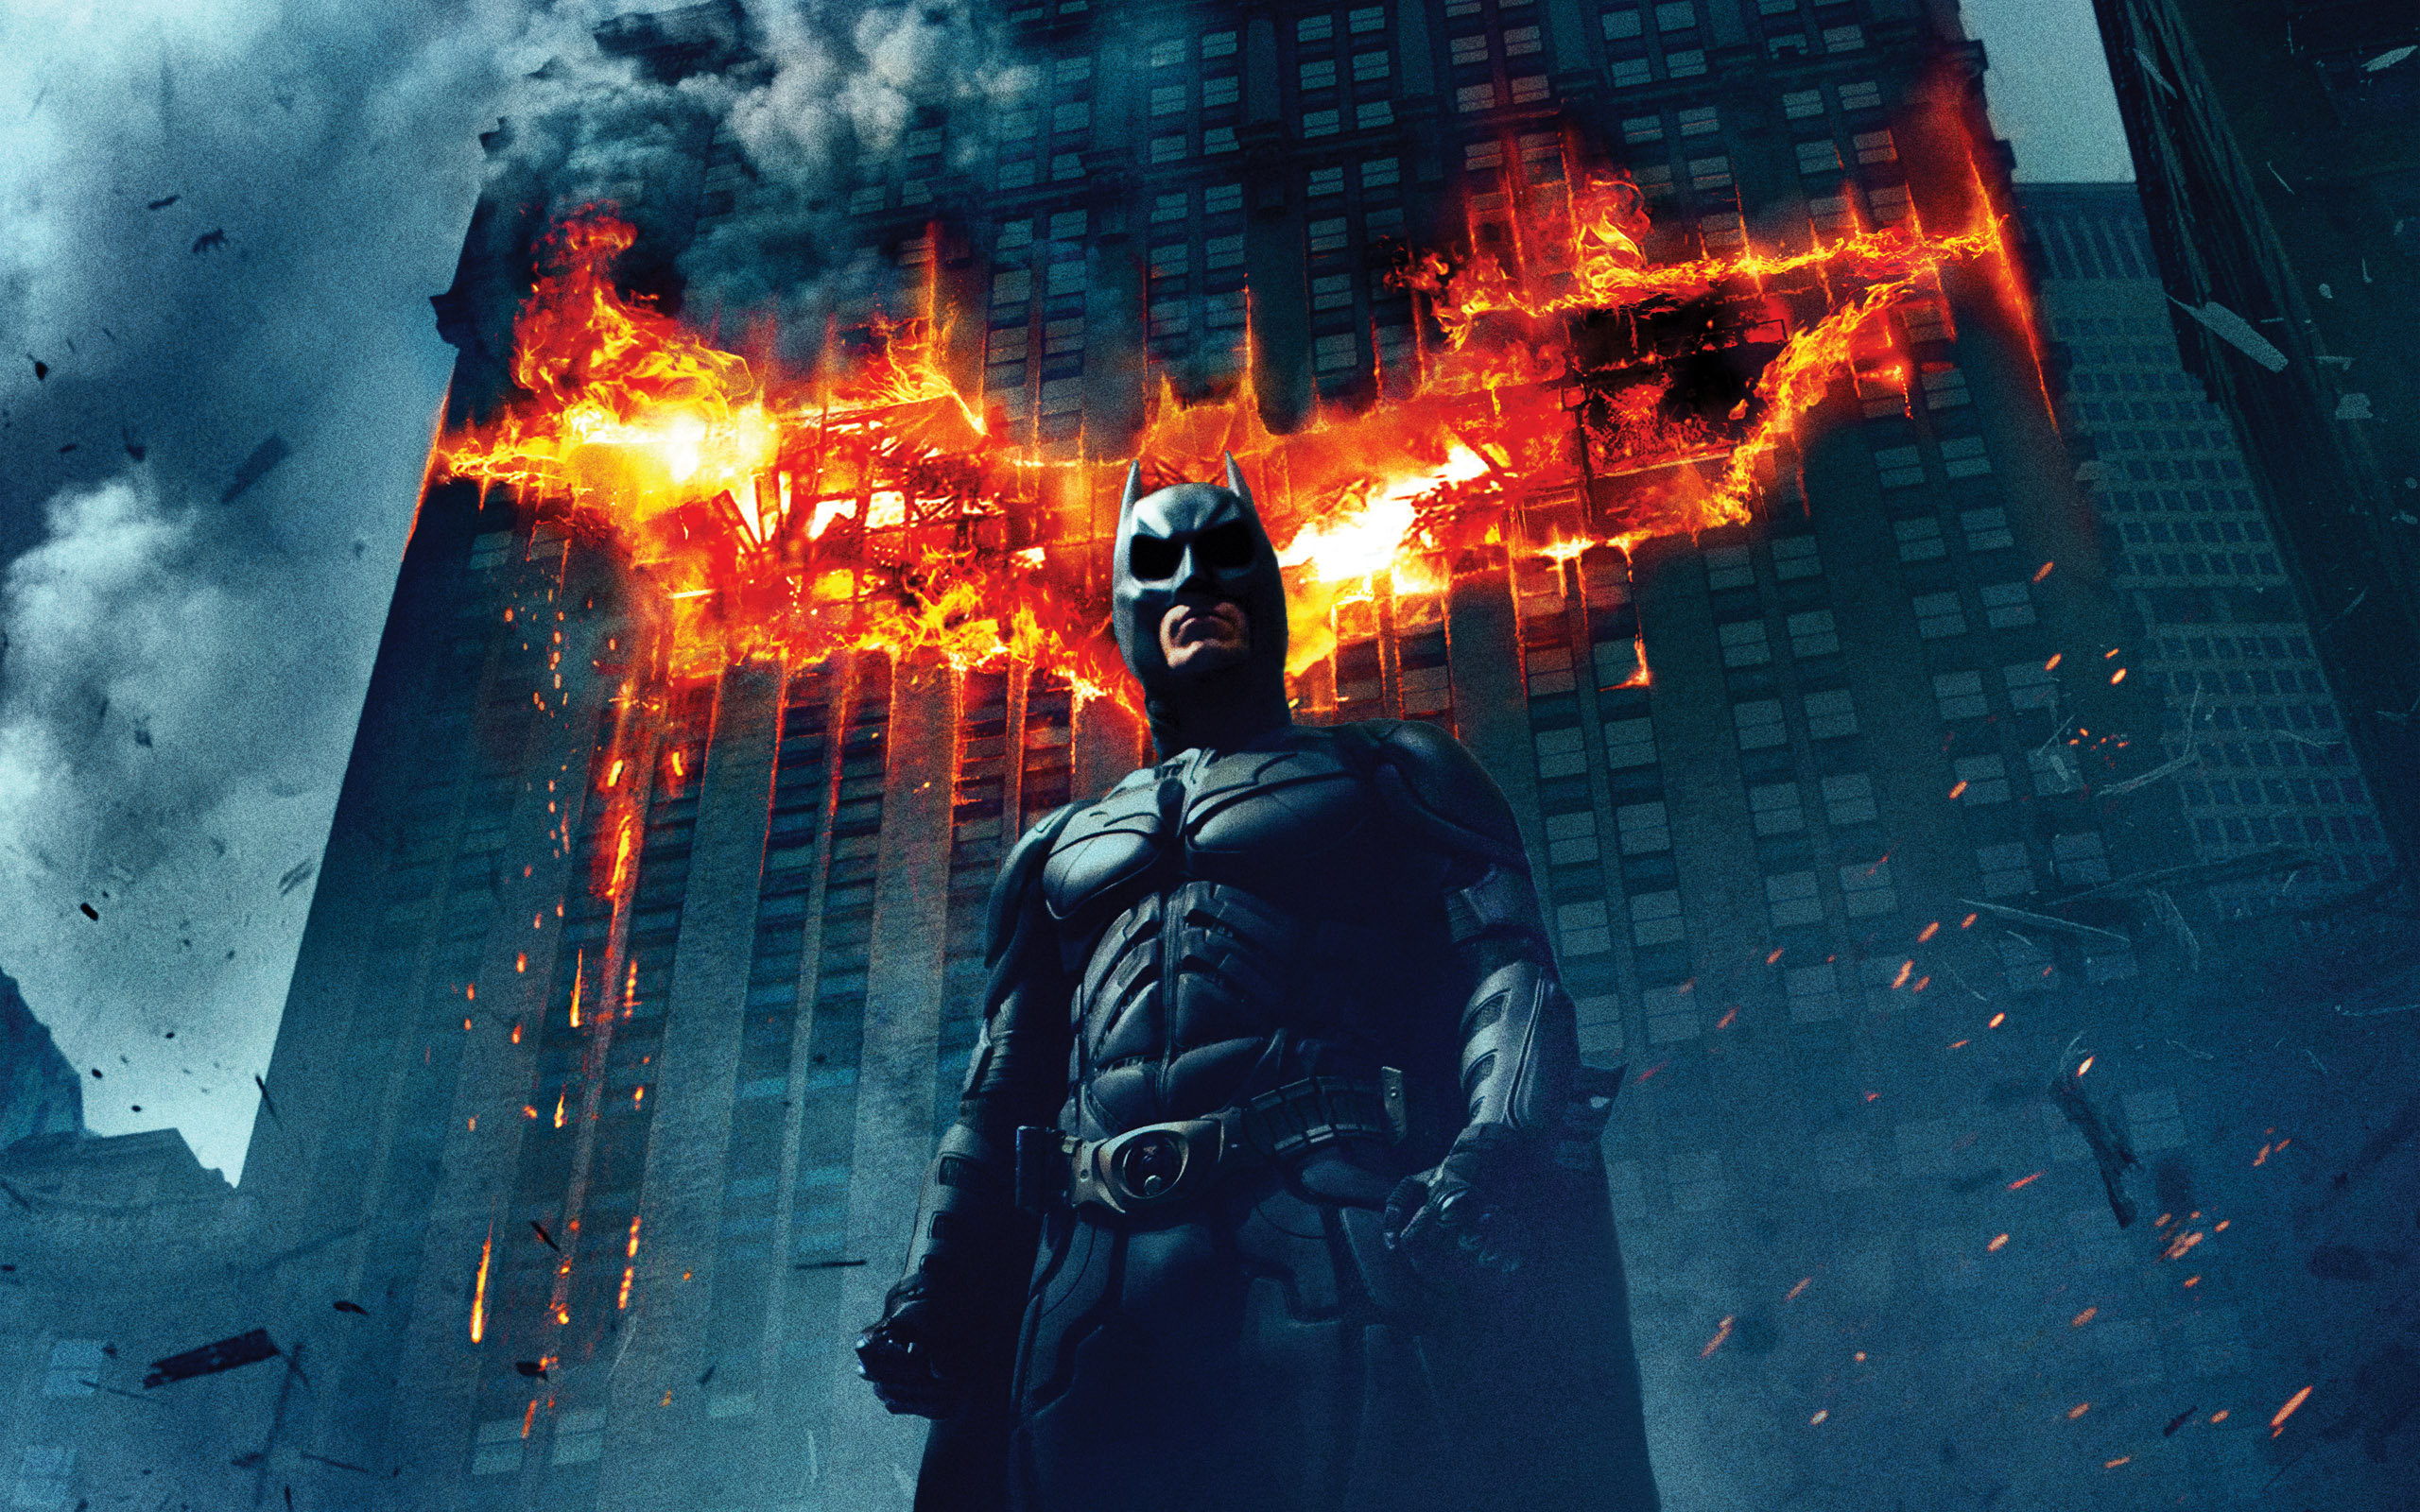 Descarga gratuita de fondo de pantalla para móvil de El Caballero Oscuro, Hombre Murciélago, The Batman, Películas.